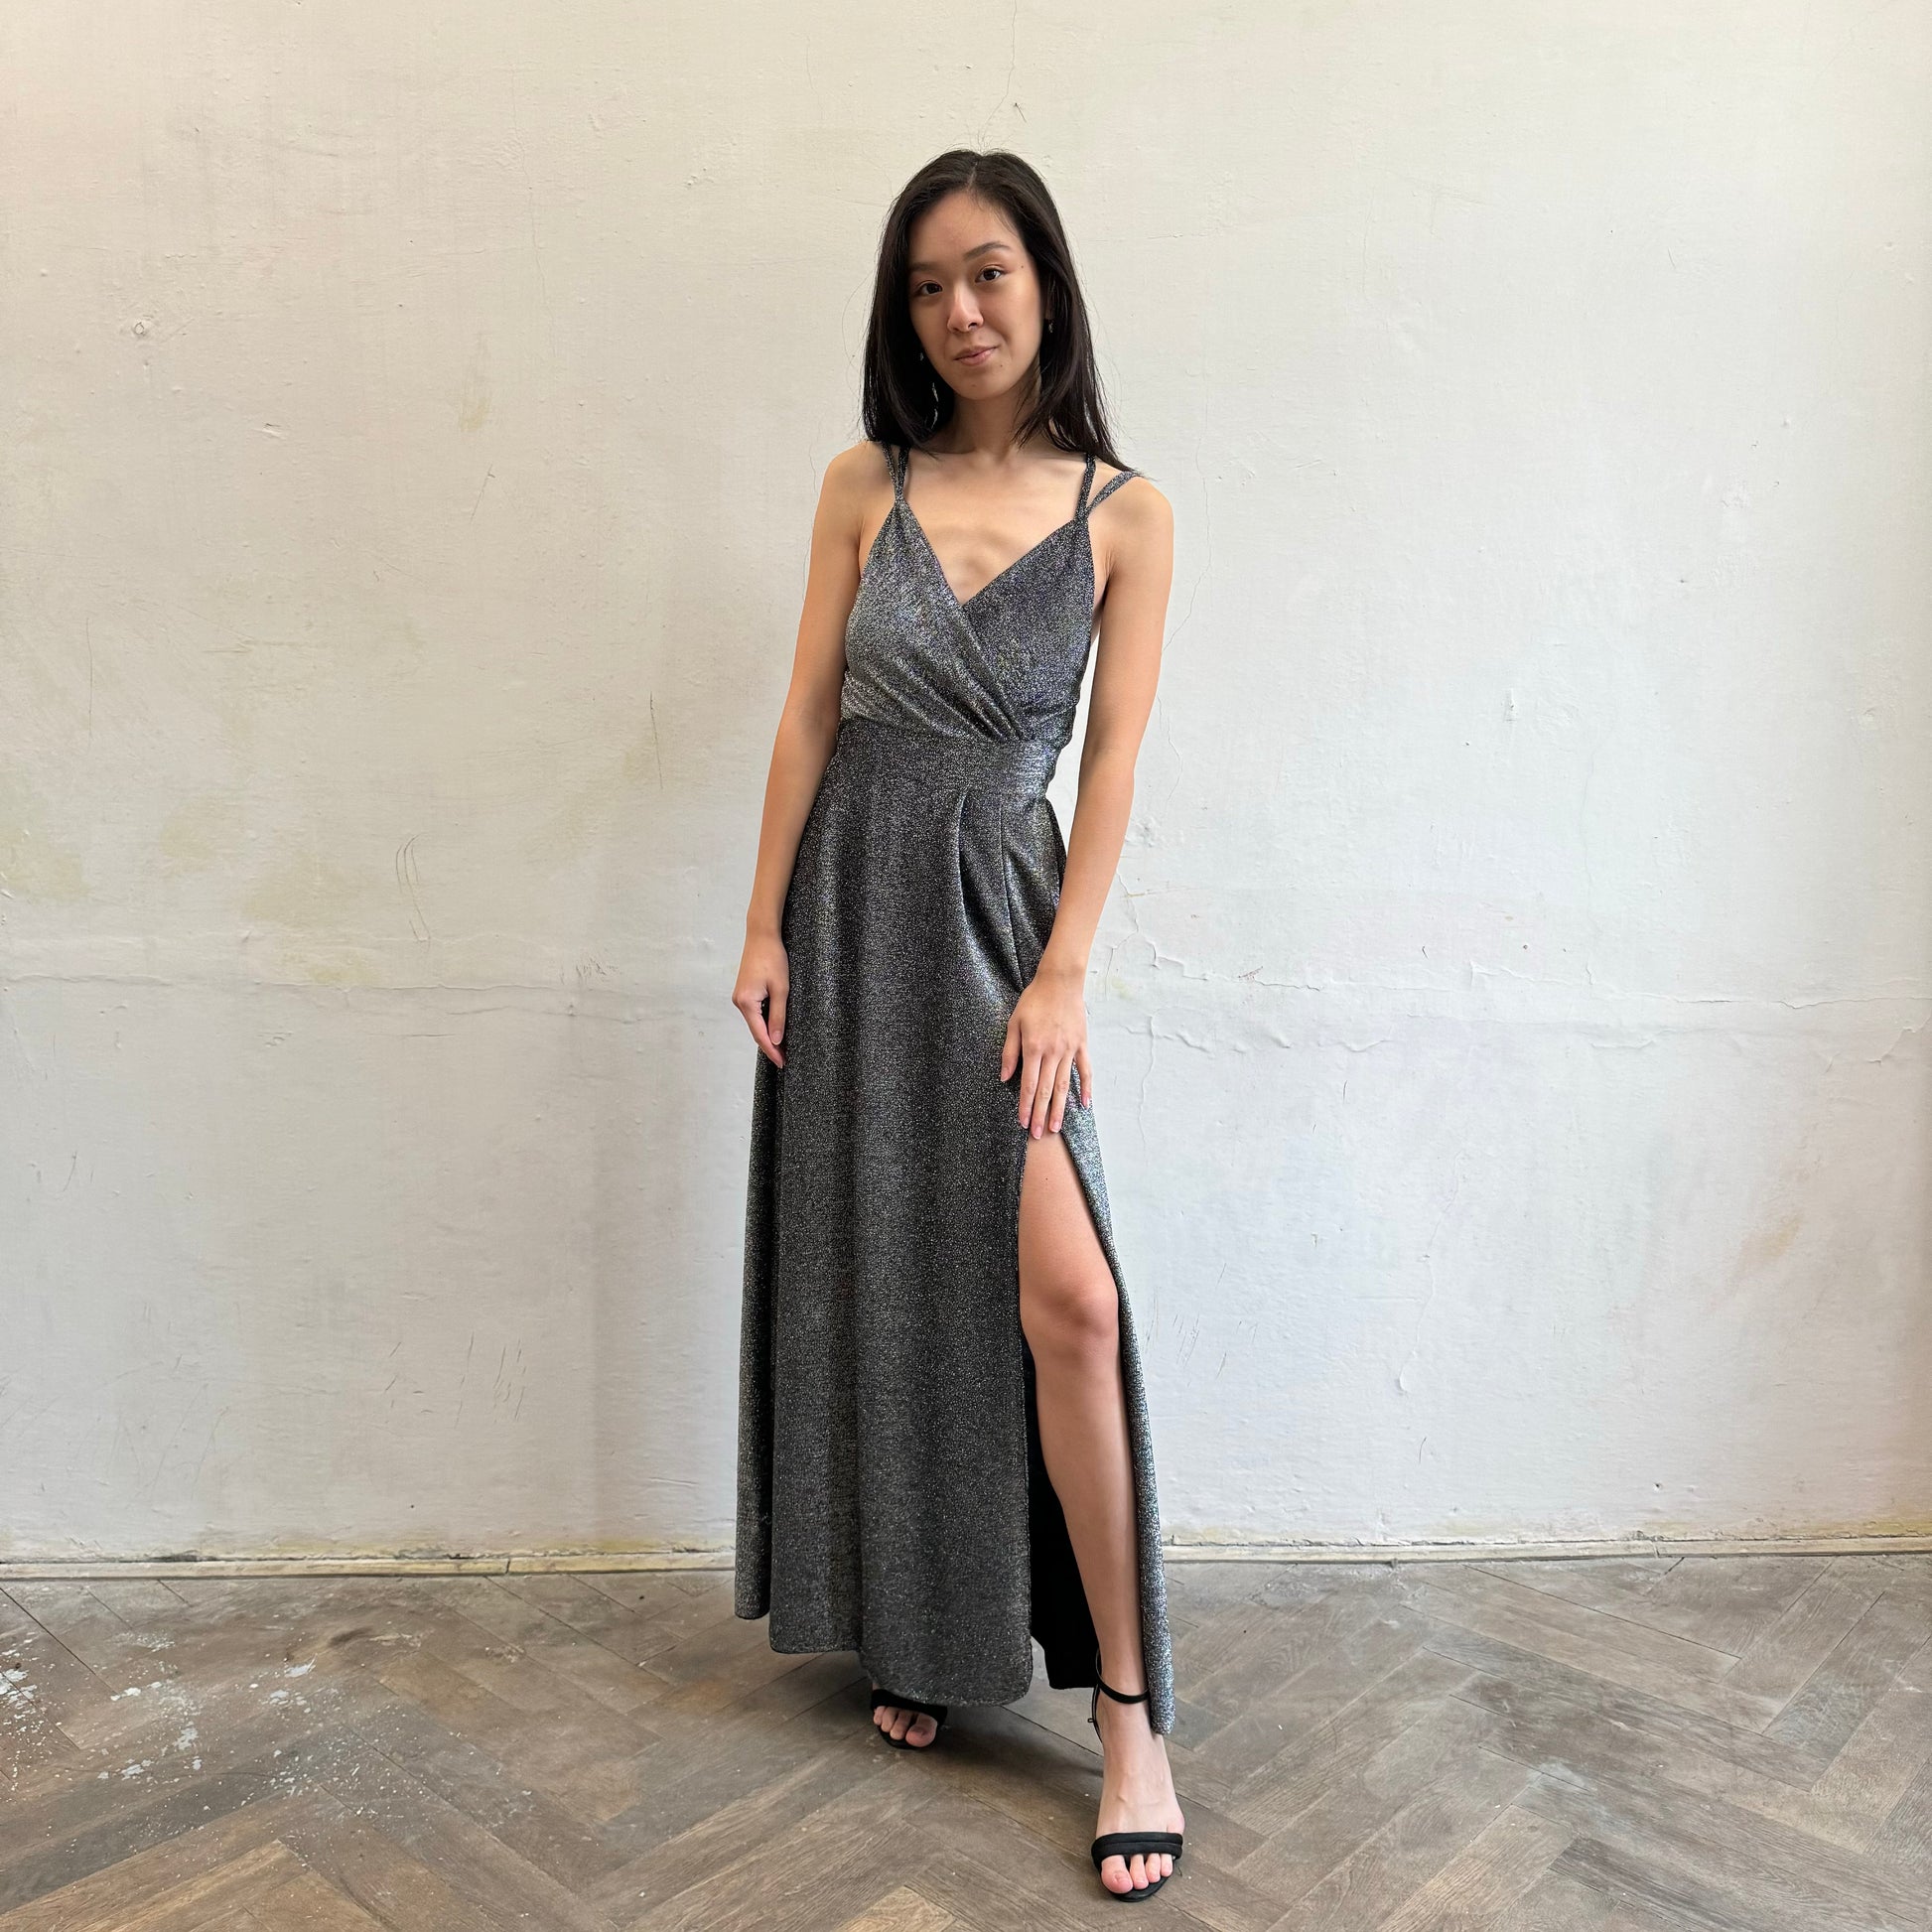 Modelka asijského původu pózující zepředu se třpytivými společenskými šaty ve stříbrné barvě